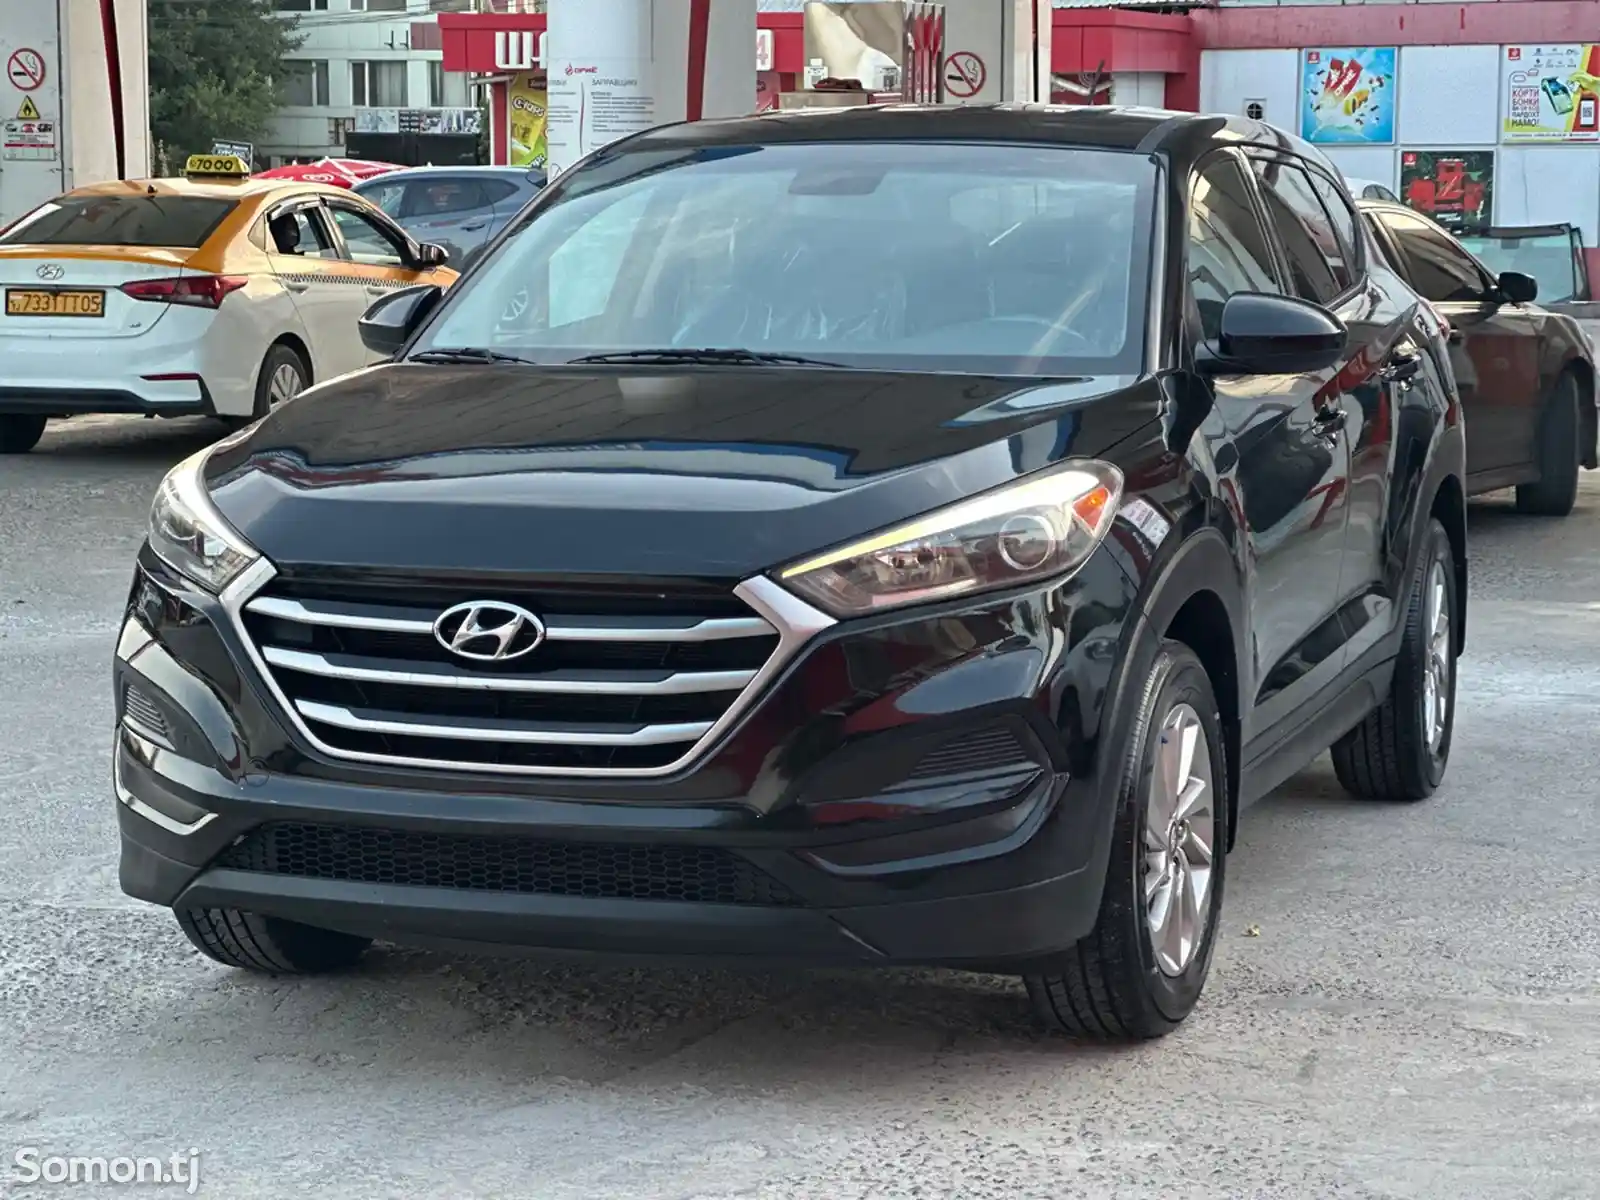 Hyundai Tucson, 2016-2